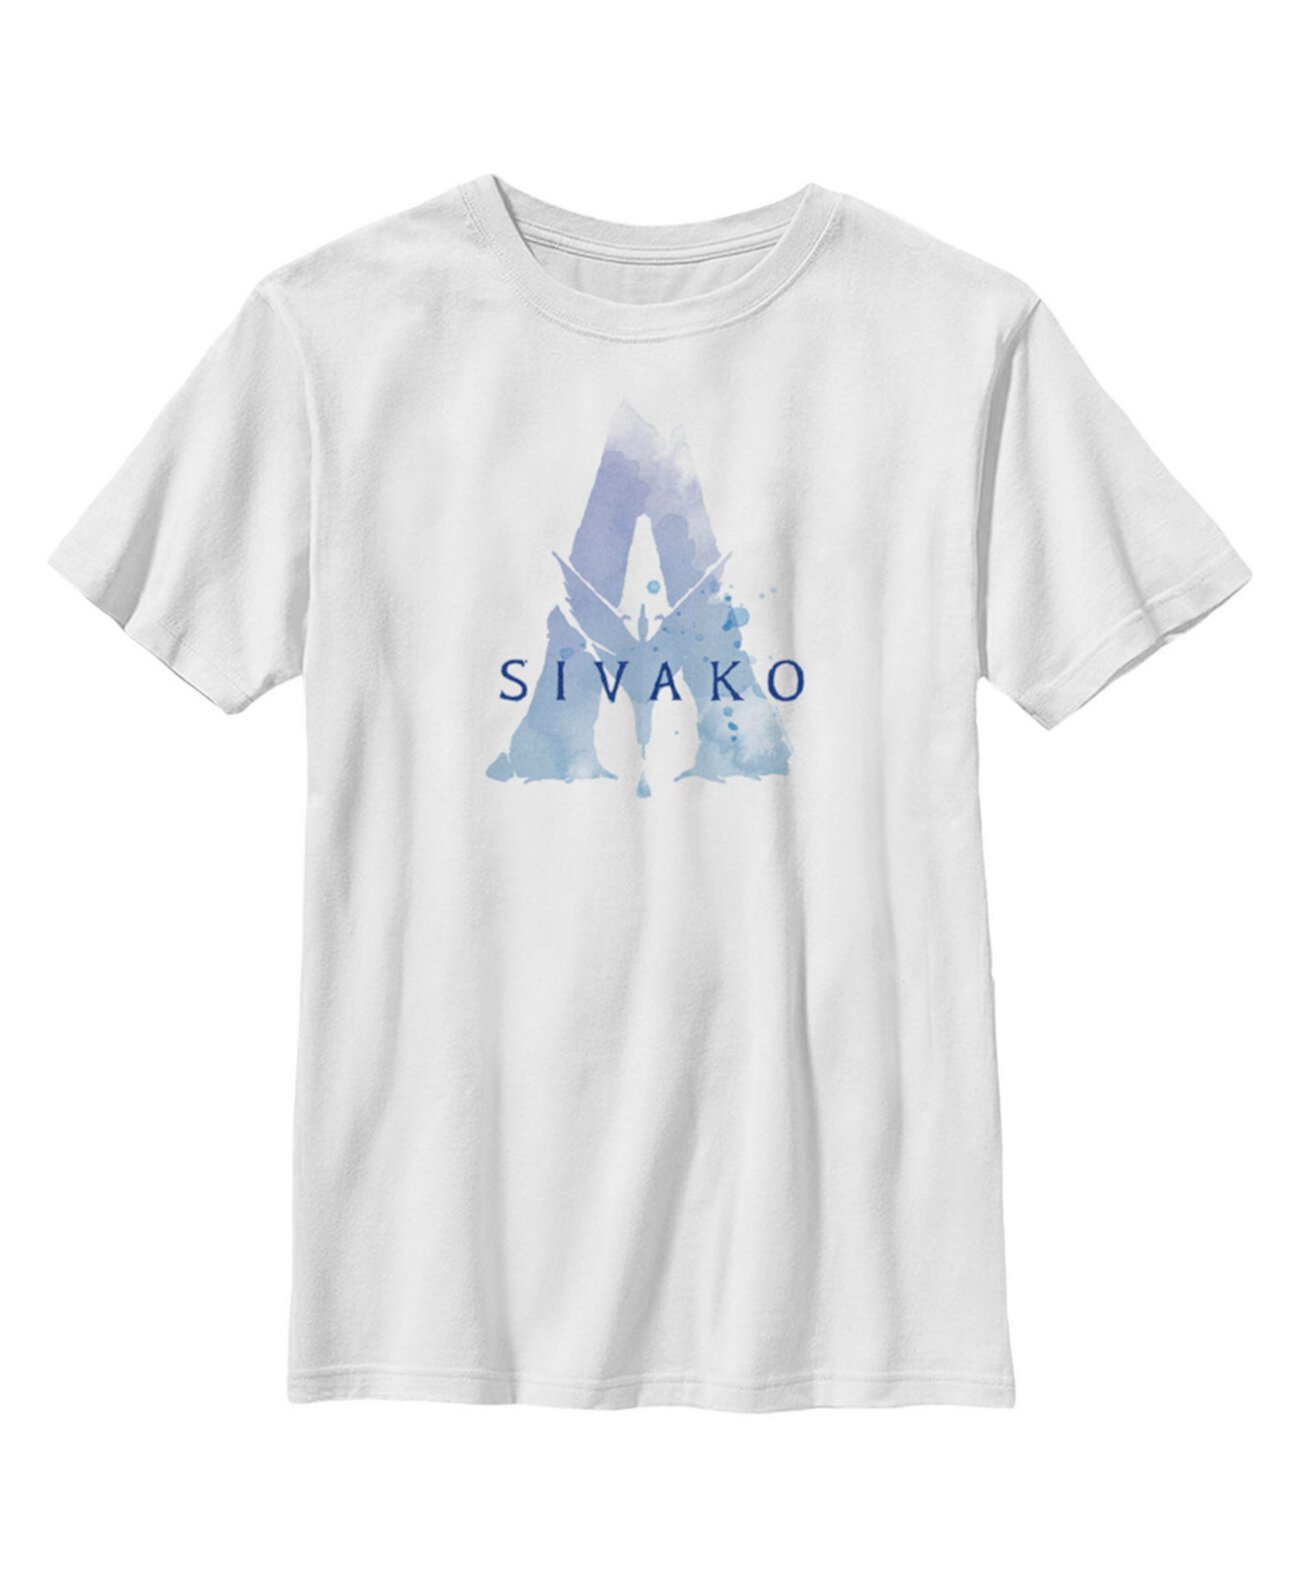 Детская футболка с акварельным логотипом Sivako Avatar для мальчиков 20th Century Fox